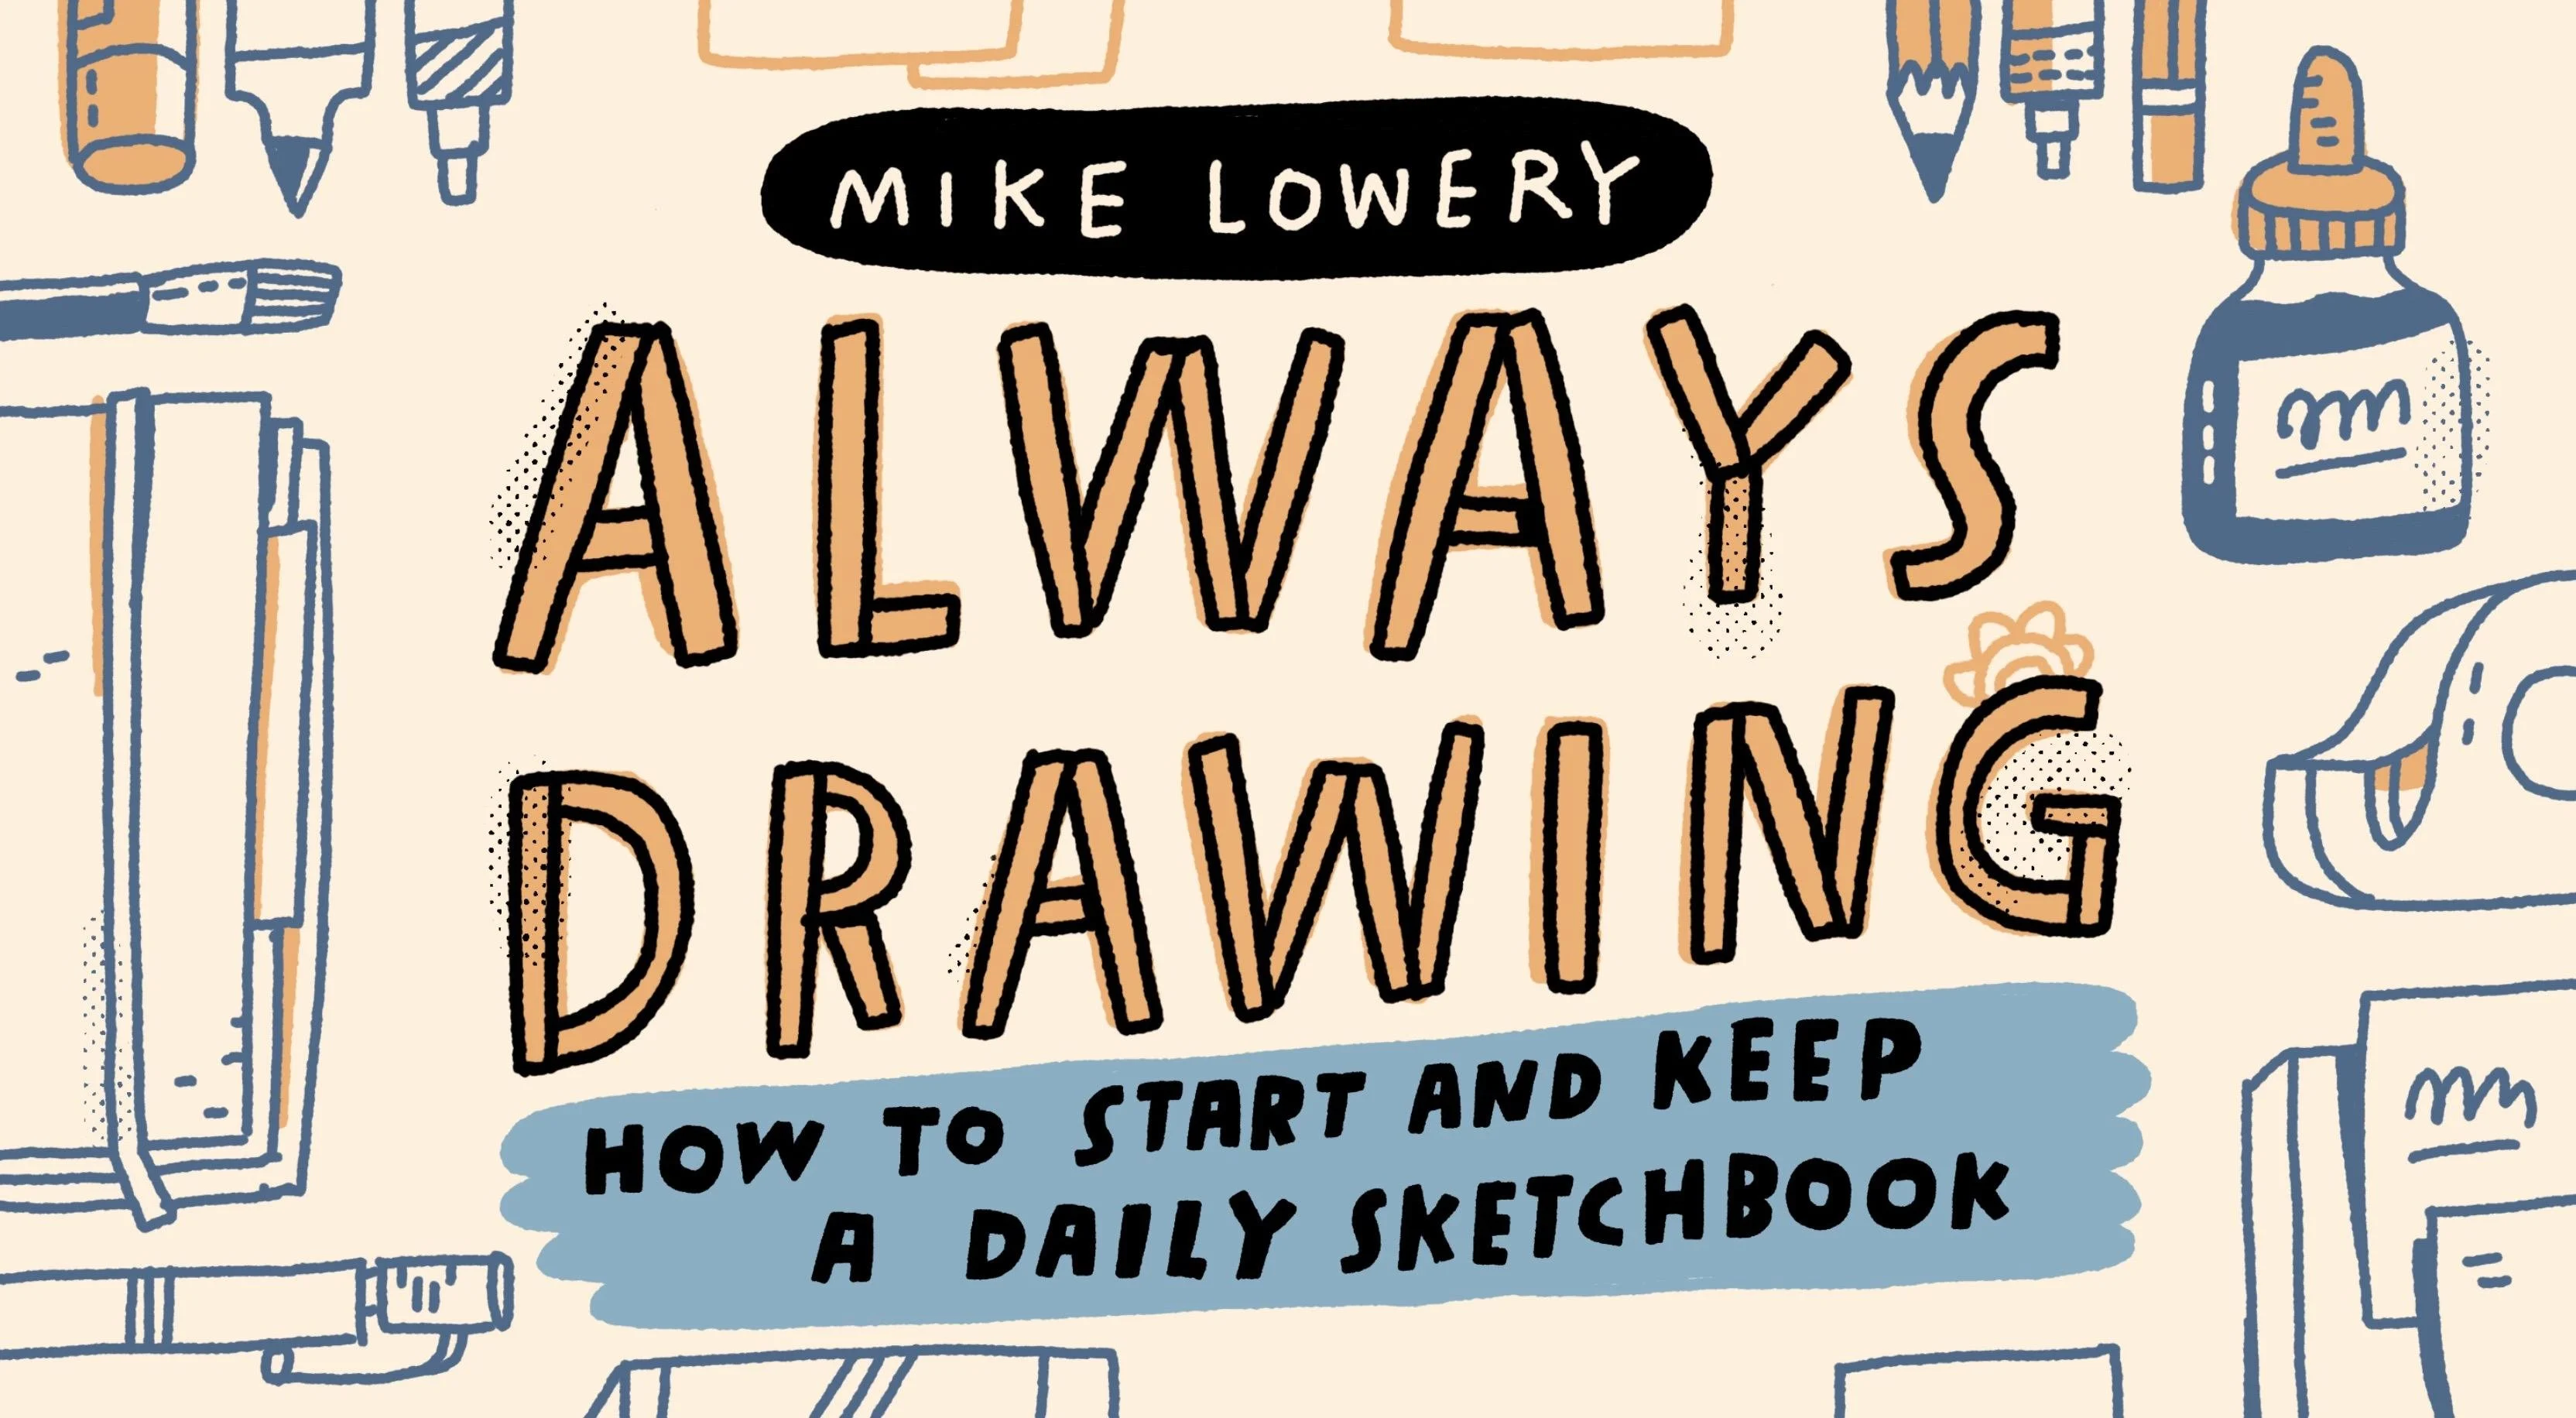 آموزش همیشه نقاشی: چگونه یک کتاب طراحی روزانه را شروع کنیم و نگه داریم